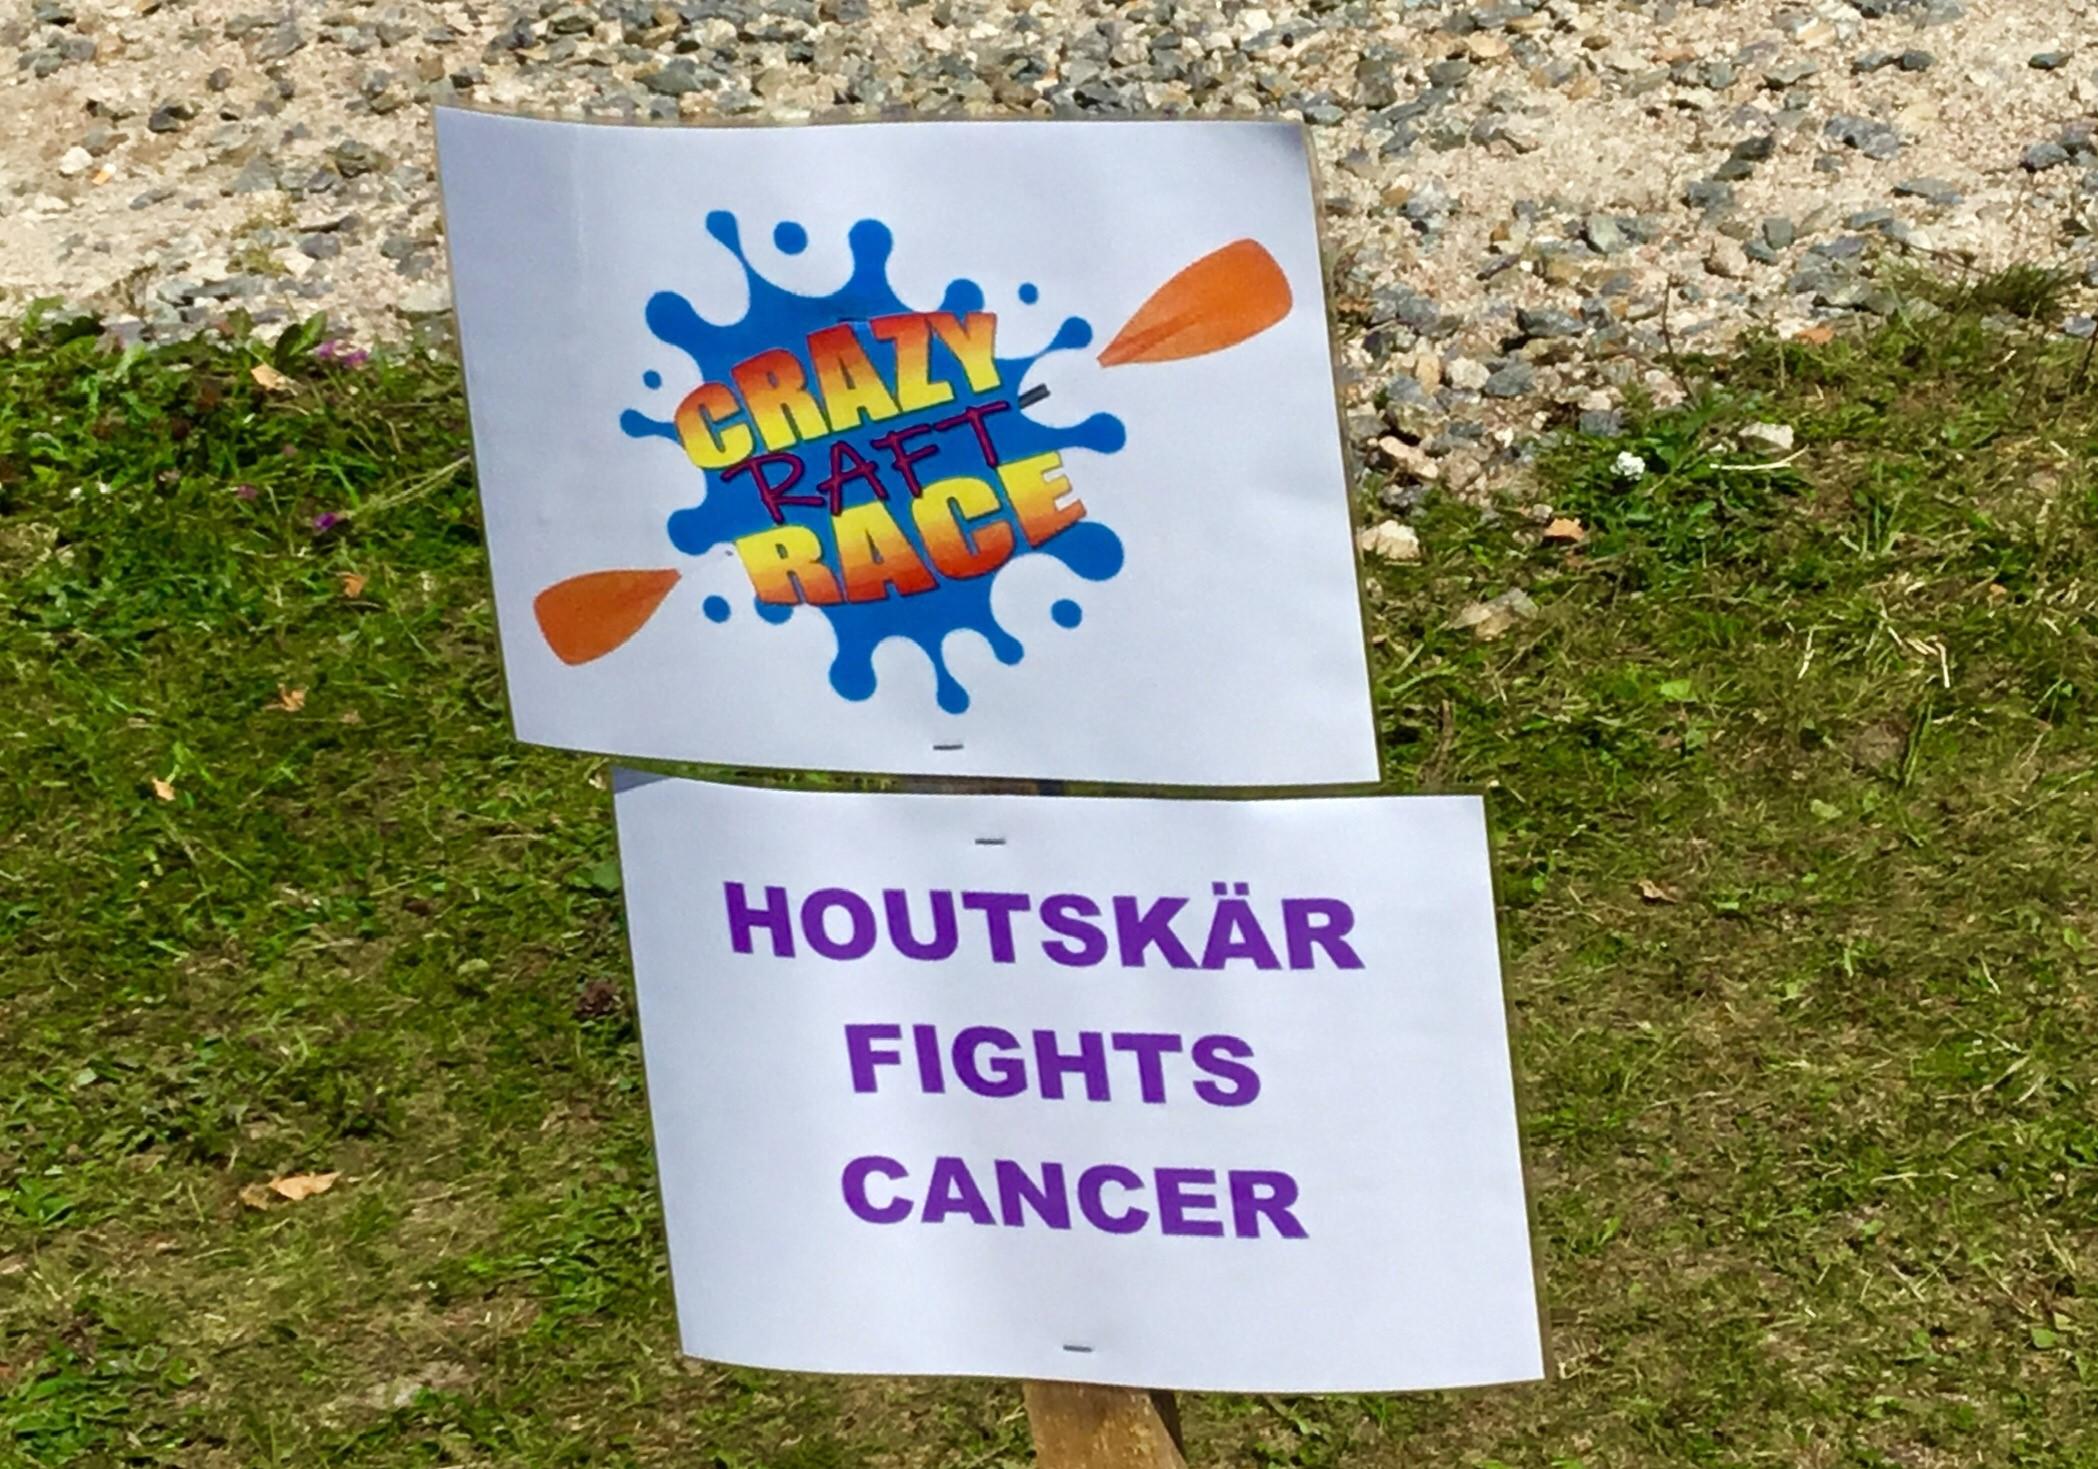 En skylt med texten "Crazy raft race" och "Houtskär fights cancer"